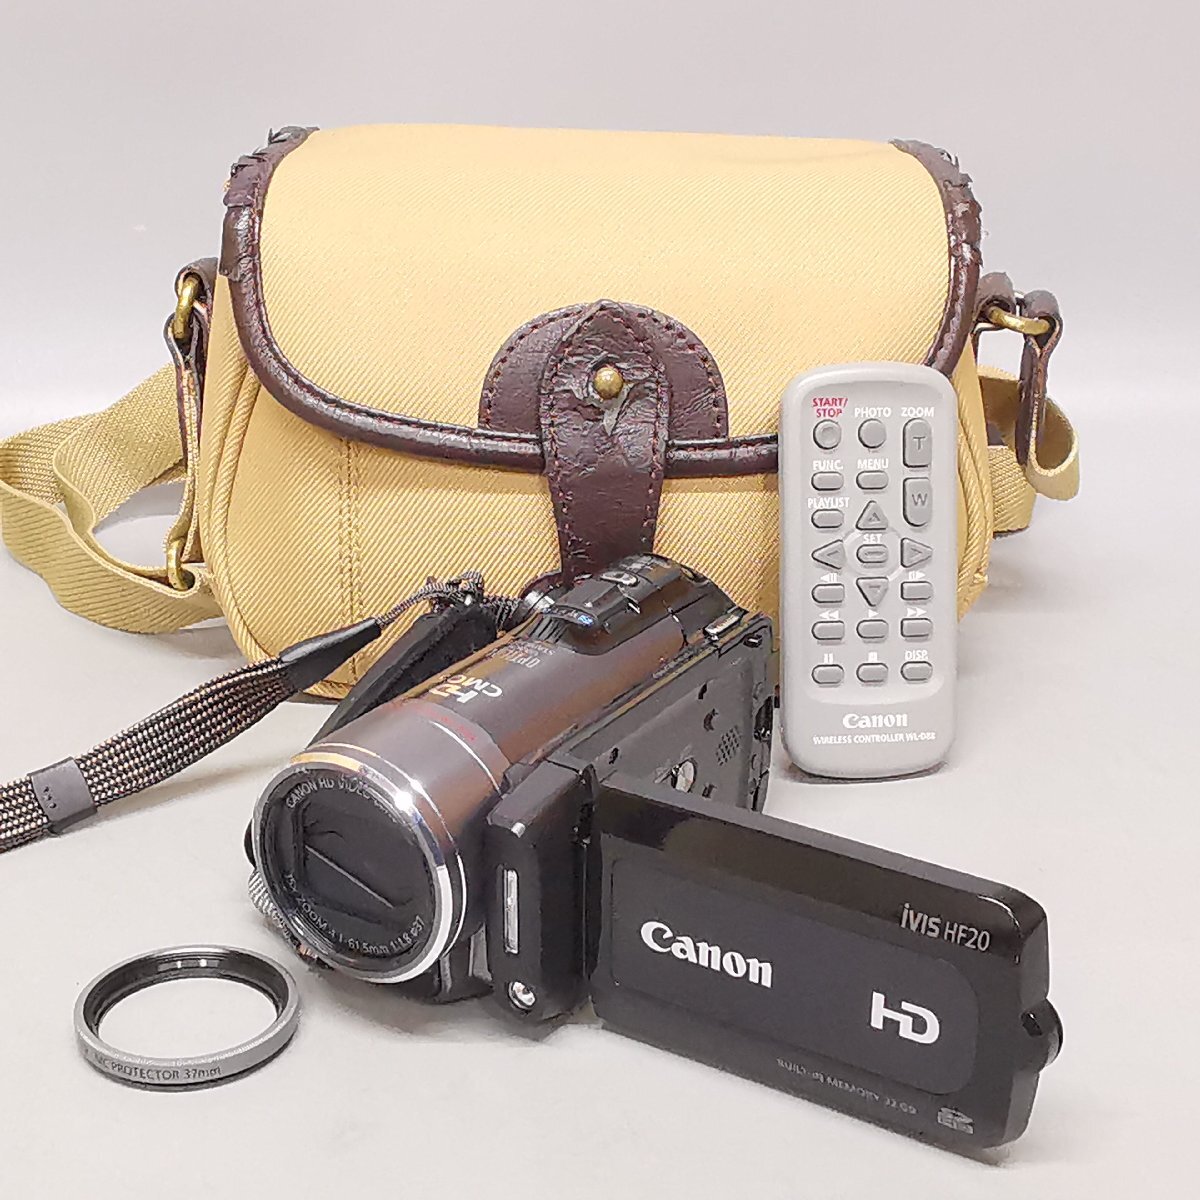 外観美品 Canon iVIS HF20 HD キヤノン デジタルビデオカメラ バッテリー リモコン 収納ケース付 現状品 Z5258_画像1